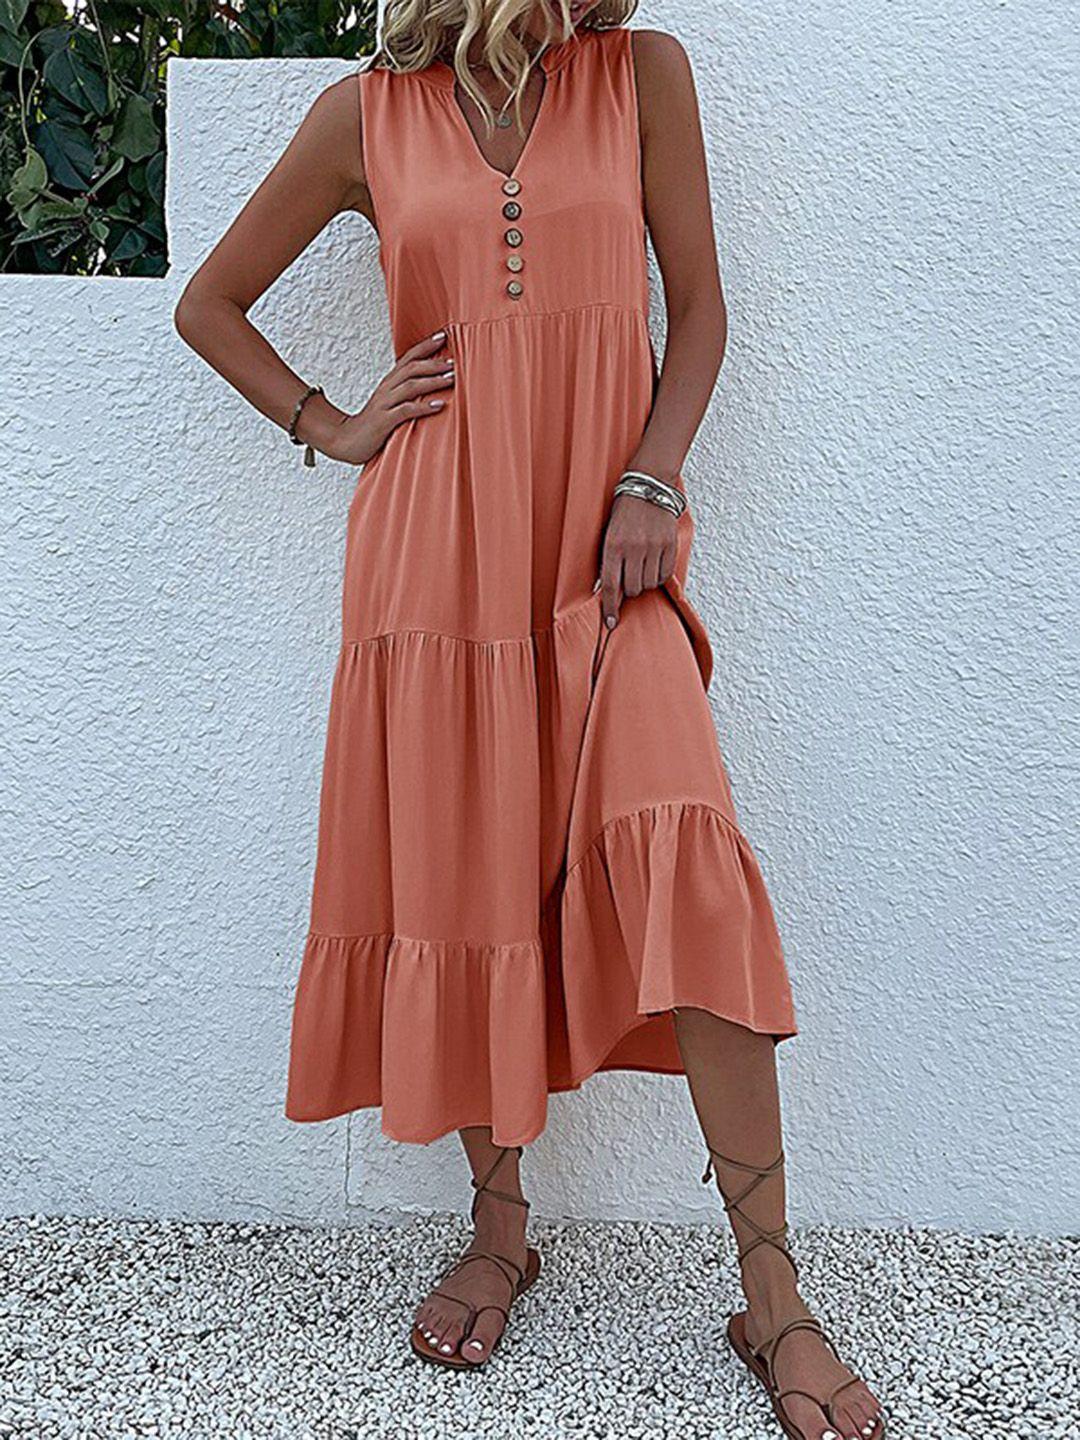 stylecast orange v-neck sleeveless tiered a-line dress